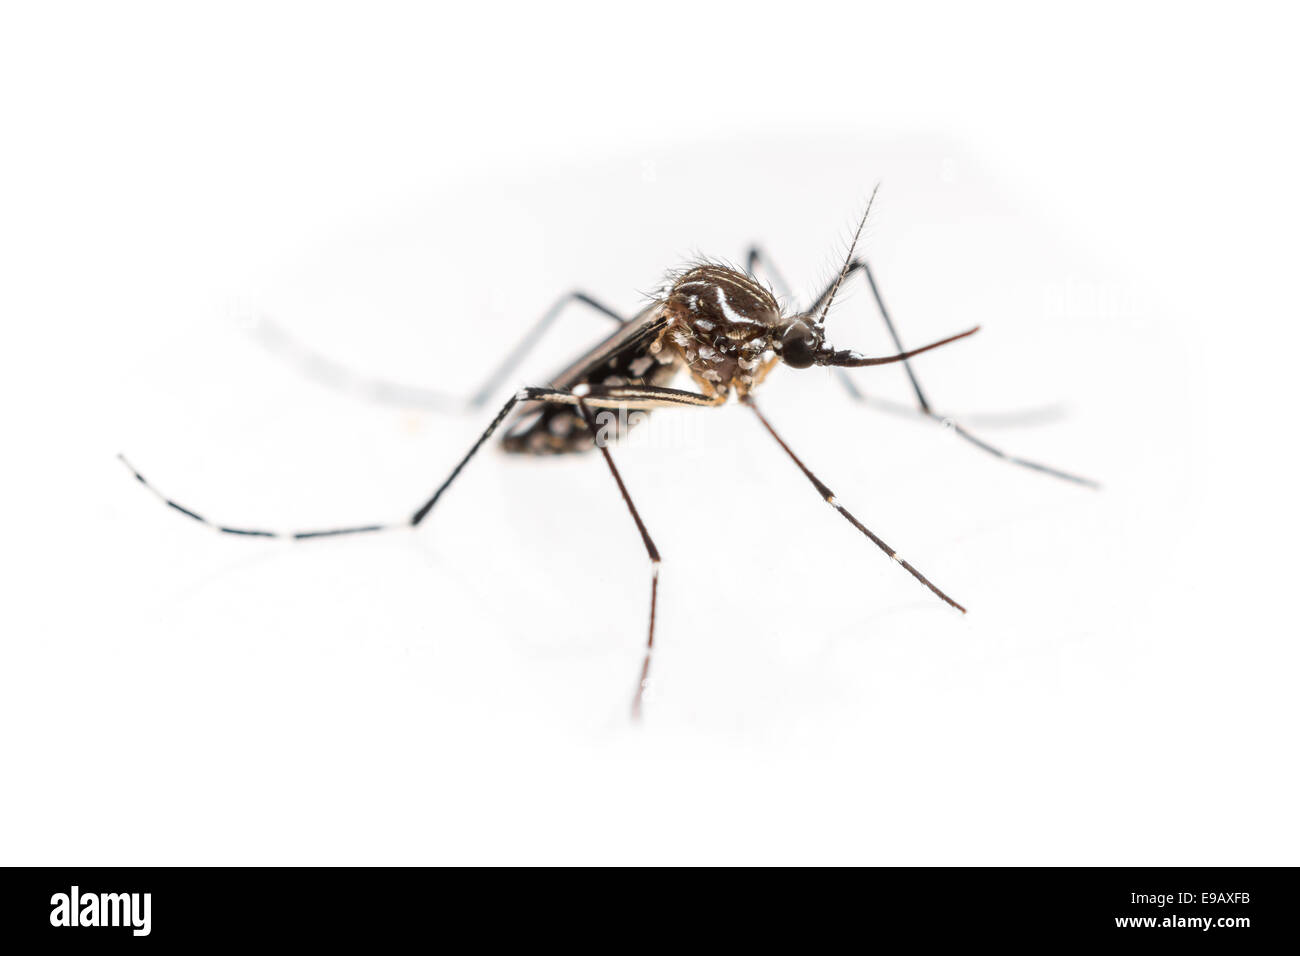 Gelbfieber, Dengue-Fieber, Chikungunya und Zika Virus Mücke Aedes aegypti Stockfoto